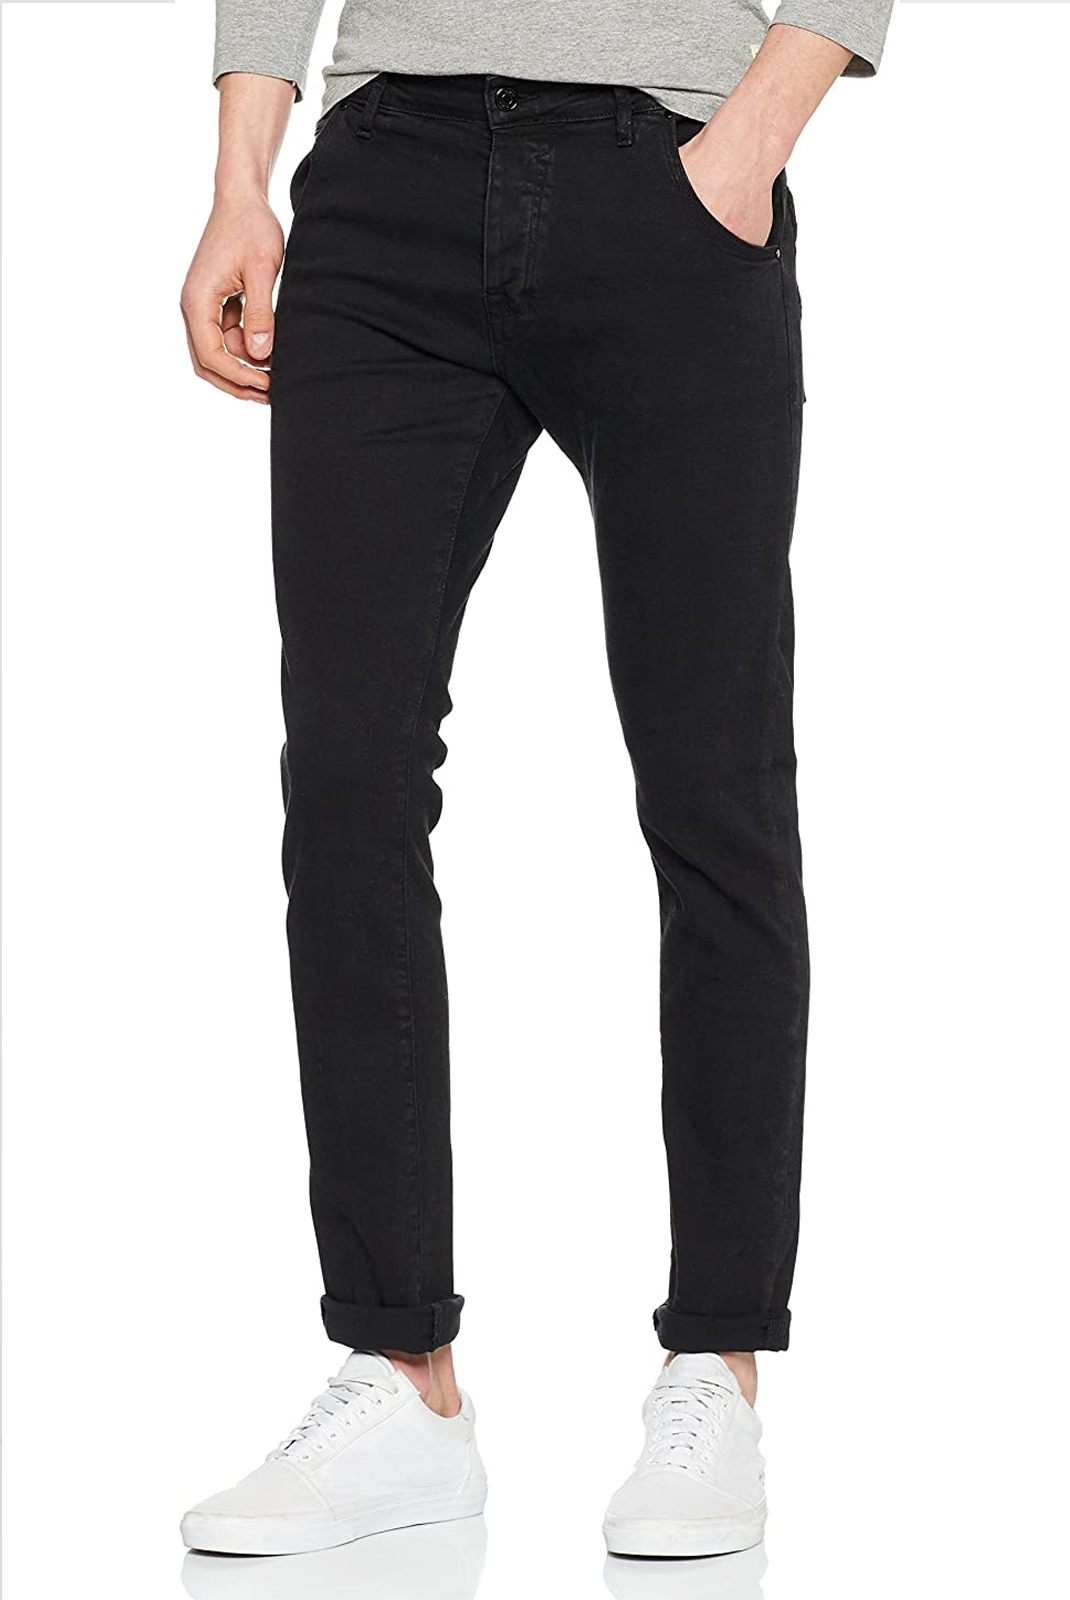 Jeans slim noir homme Guess - M81a05